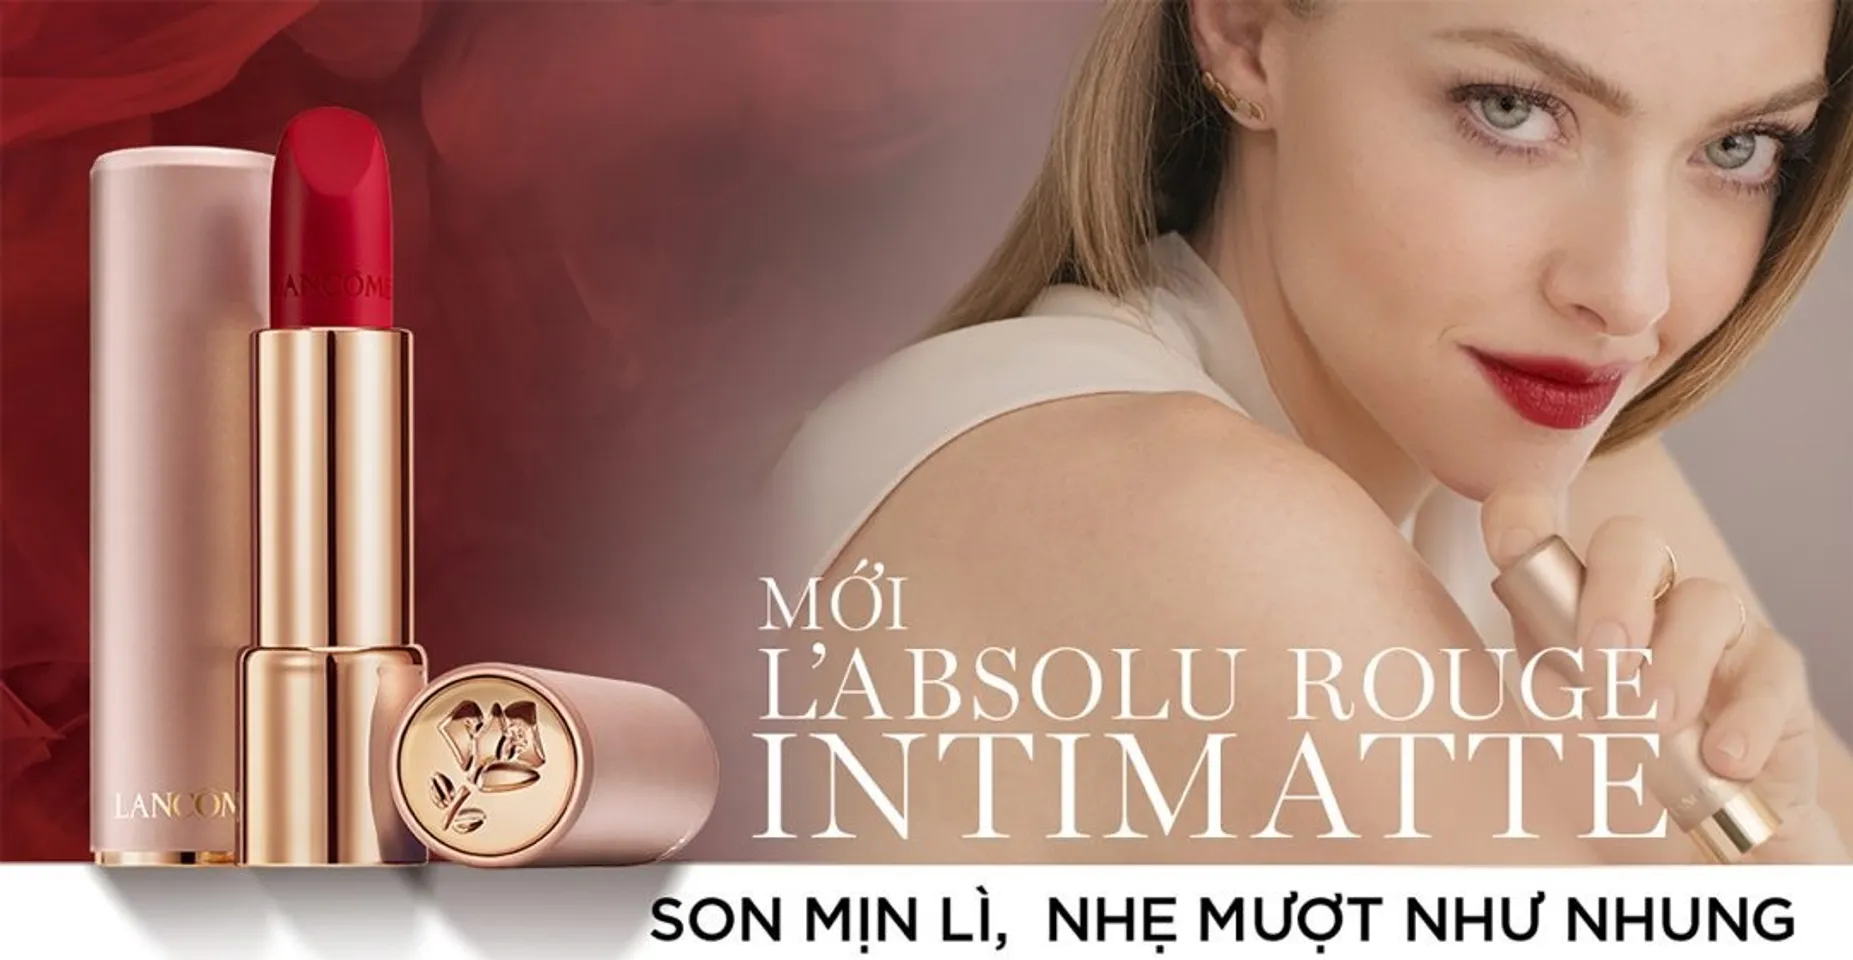 Son Môi Lancôme L'Absolu Rouge Intimatte 3.4g đã có mặt tại Chiaki.vn